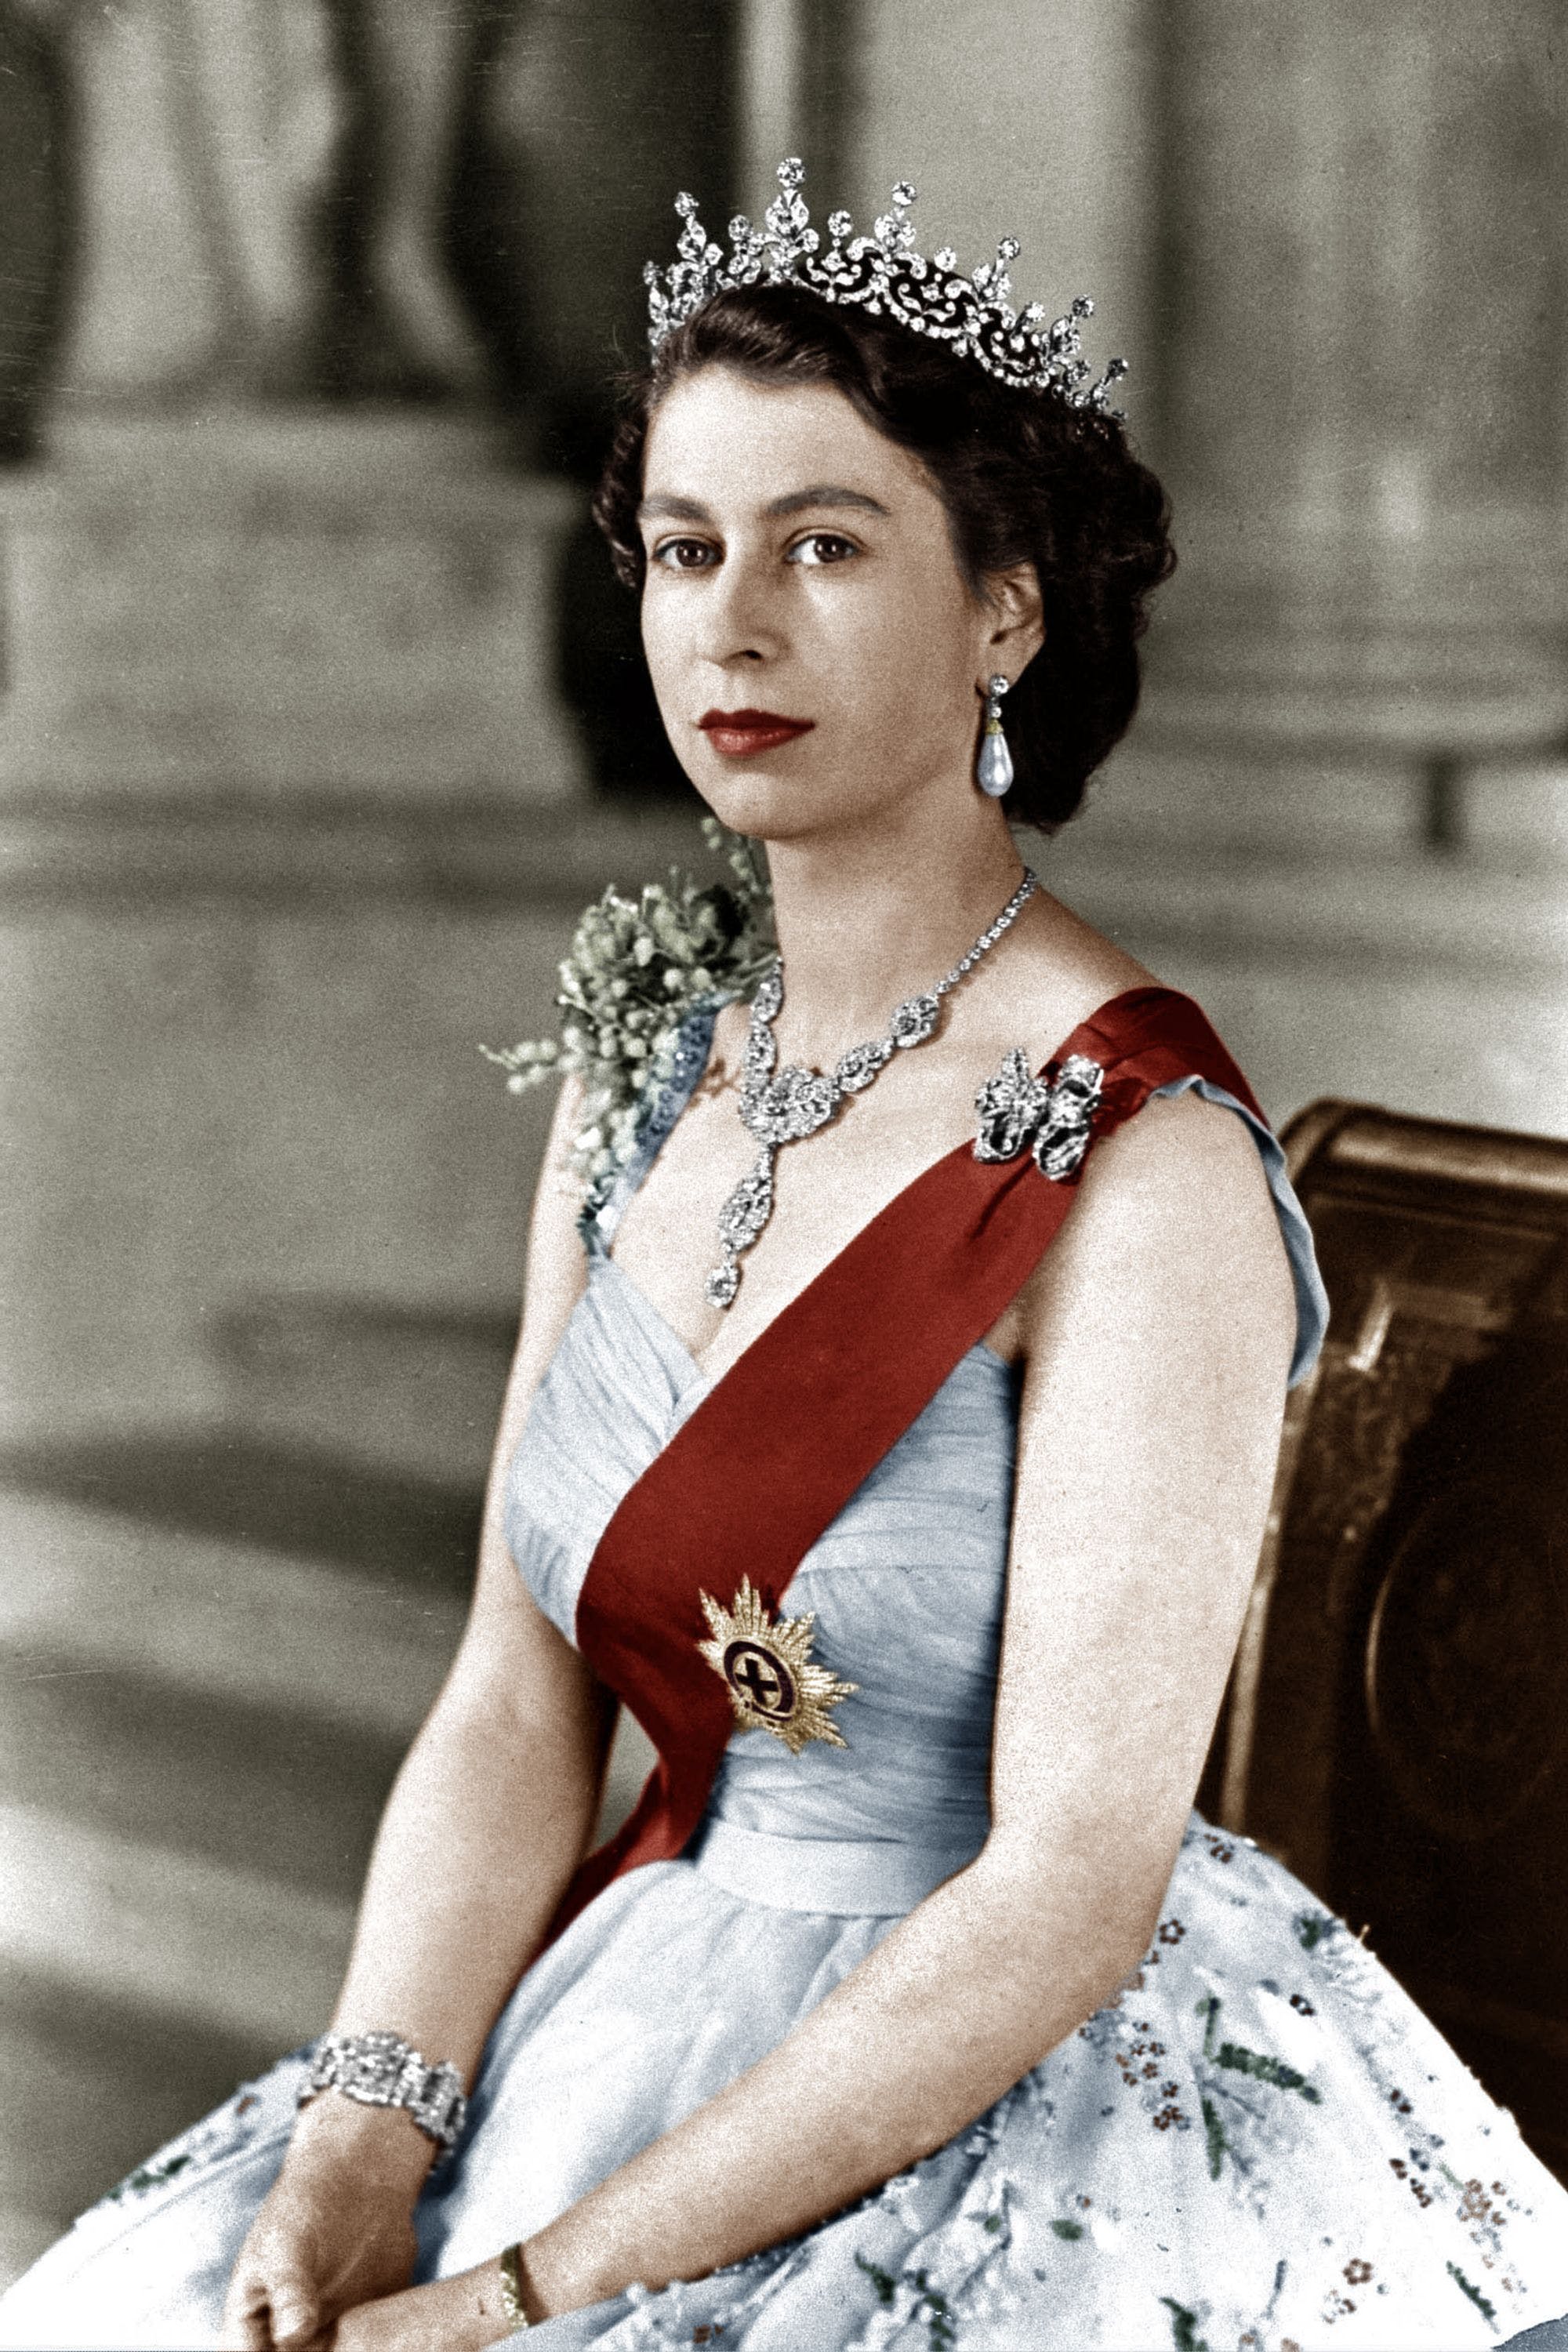 Young Photo of Queen Elizabeth II Royal Wedding Coronation